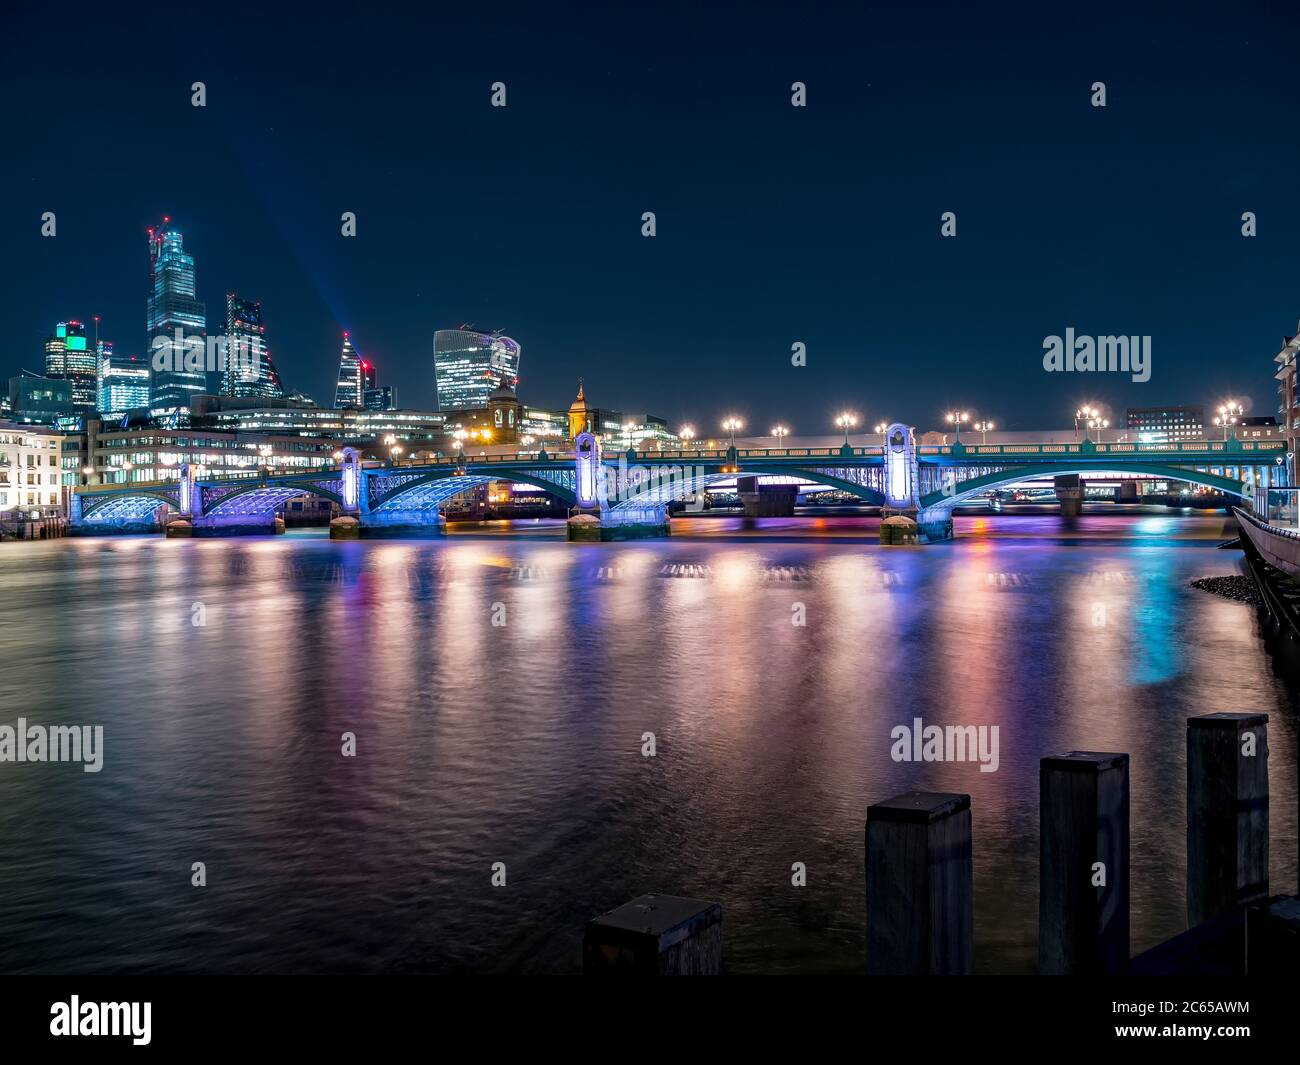 Vue panoramique de nuit sur la Tamise avec pont Southwark et quartier financier en arrière-plan. Paysage Urbain De Londres, Royaume-Uni Banque D'Images